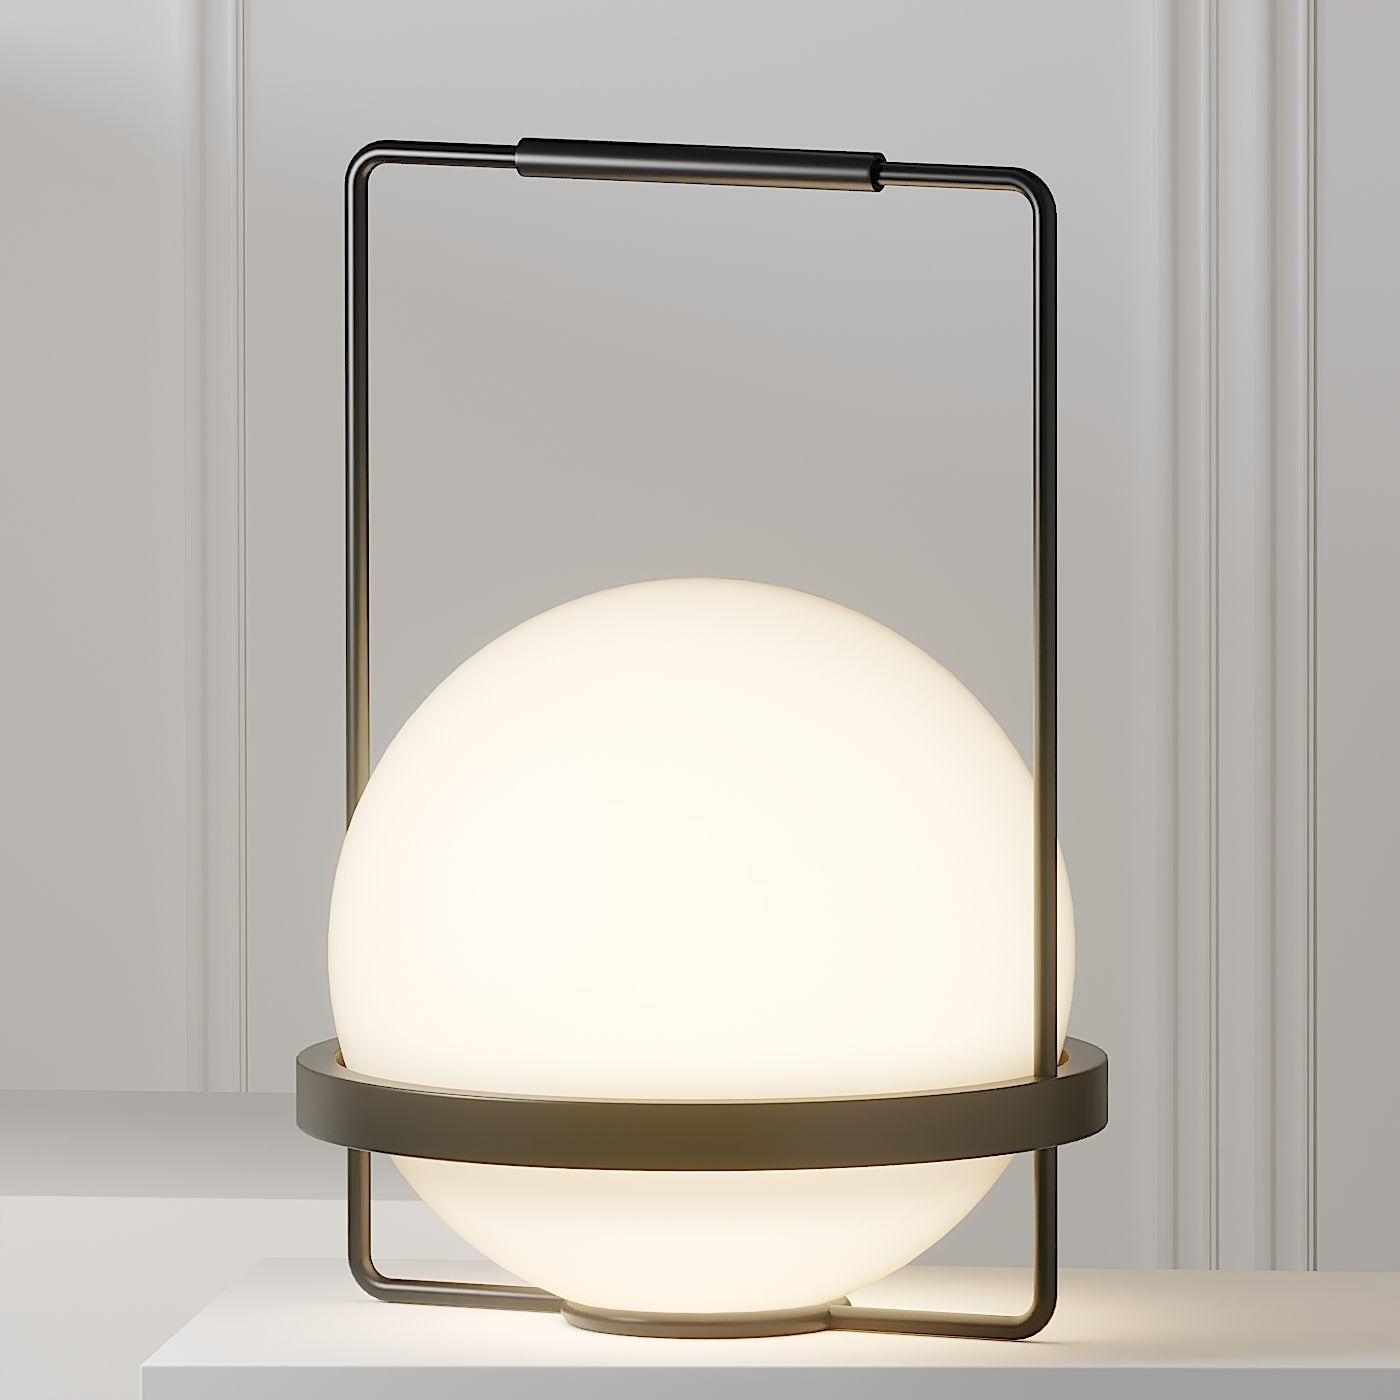 vibia-palma-table-lamp-3d-model-max-obj-fbx-stl